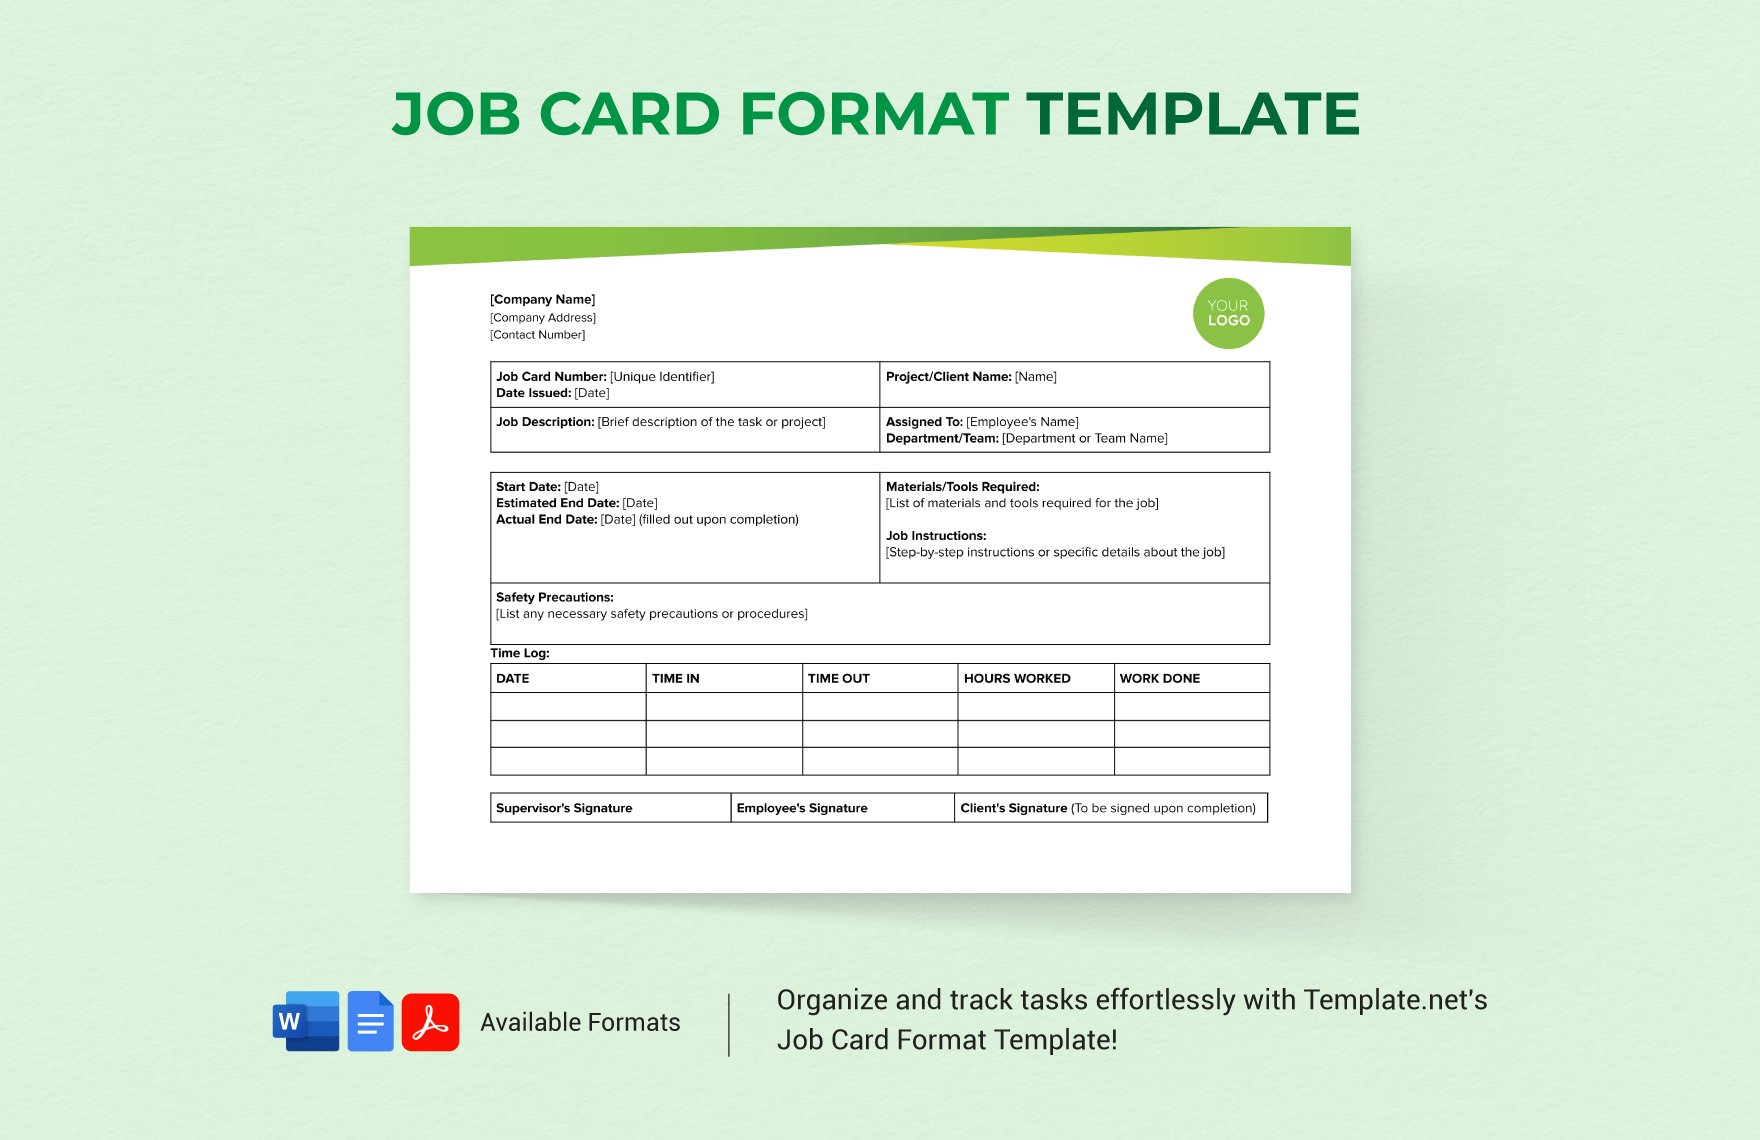 Job Card Format Template